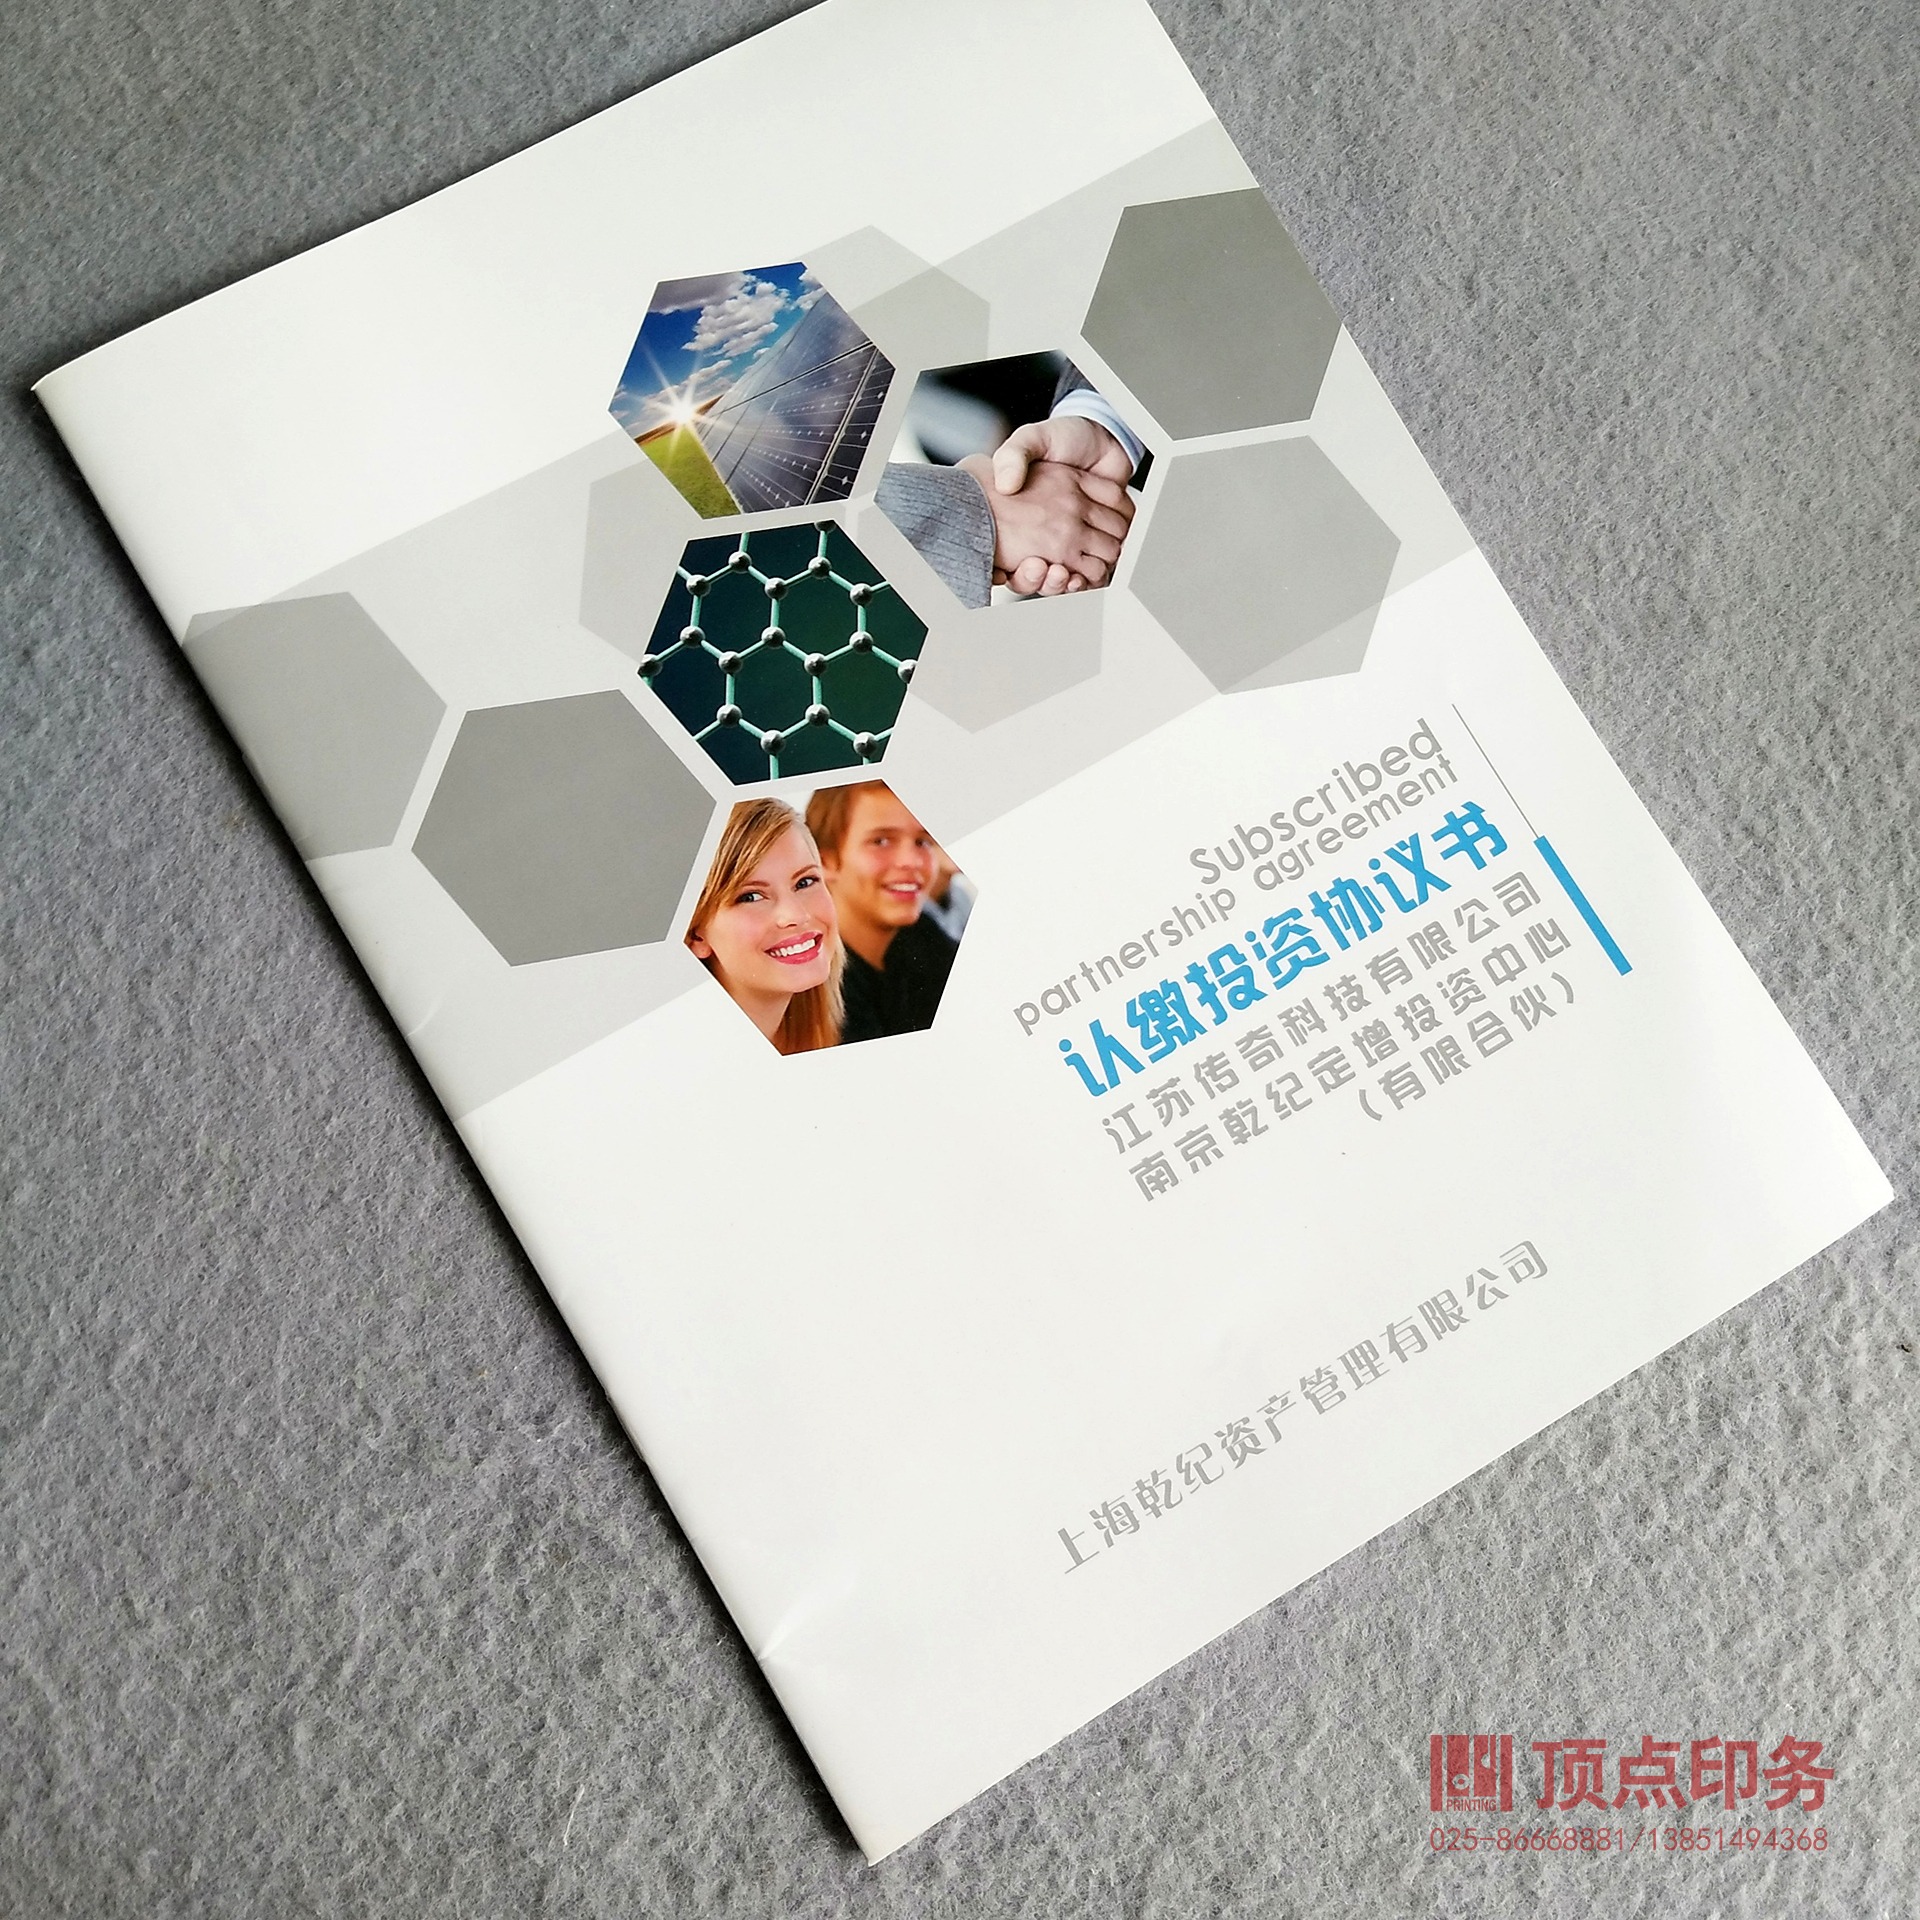 优质厂家供应 企业宣传册印刷 画册设计 彩色宣传册排版设计 南京顶点印刷厂